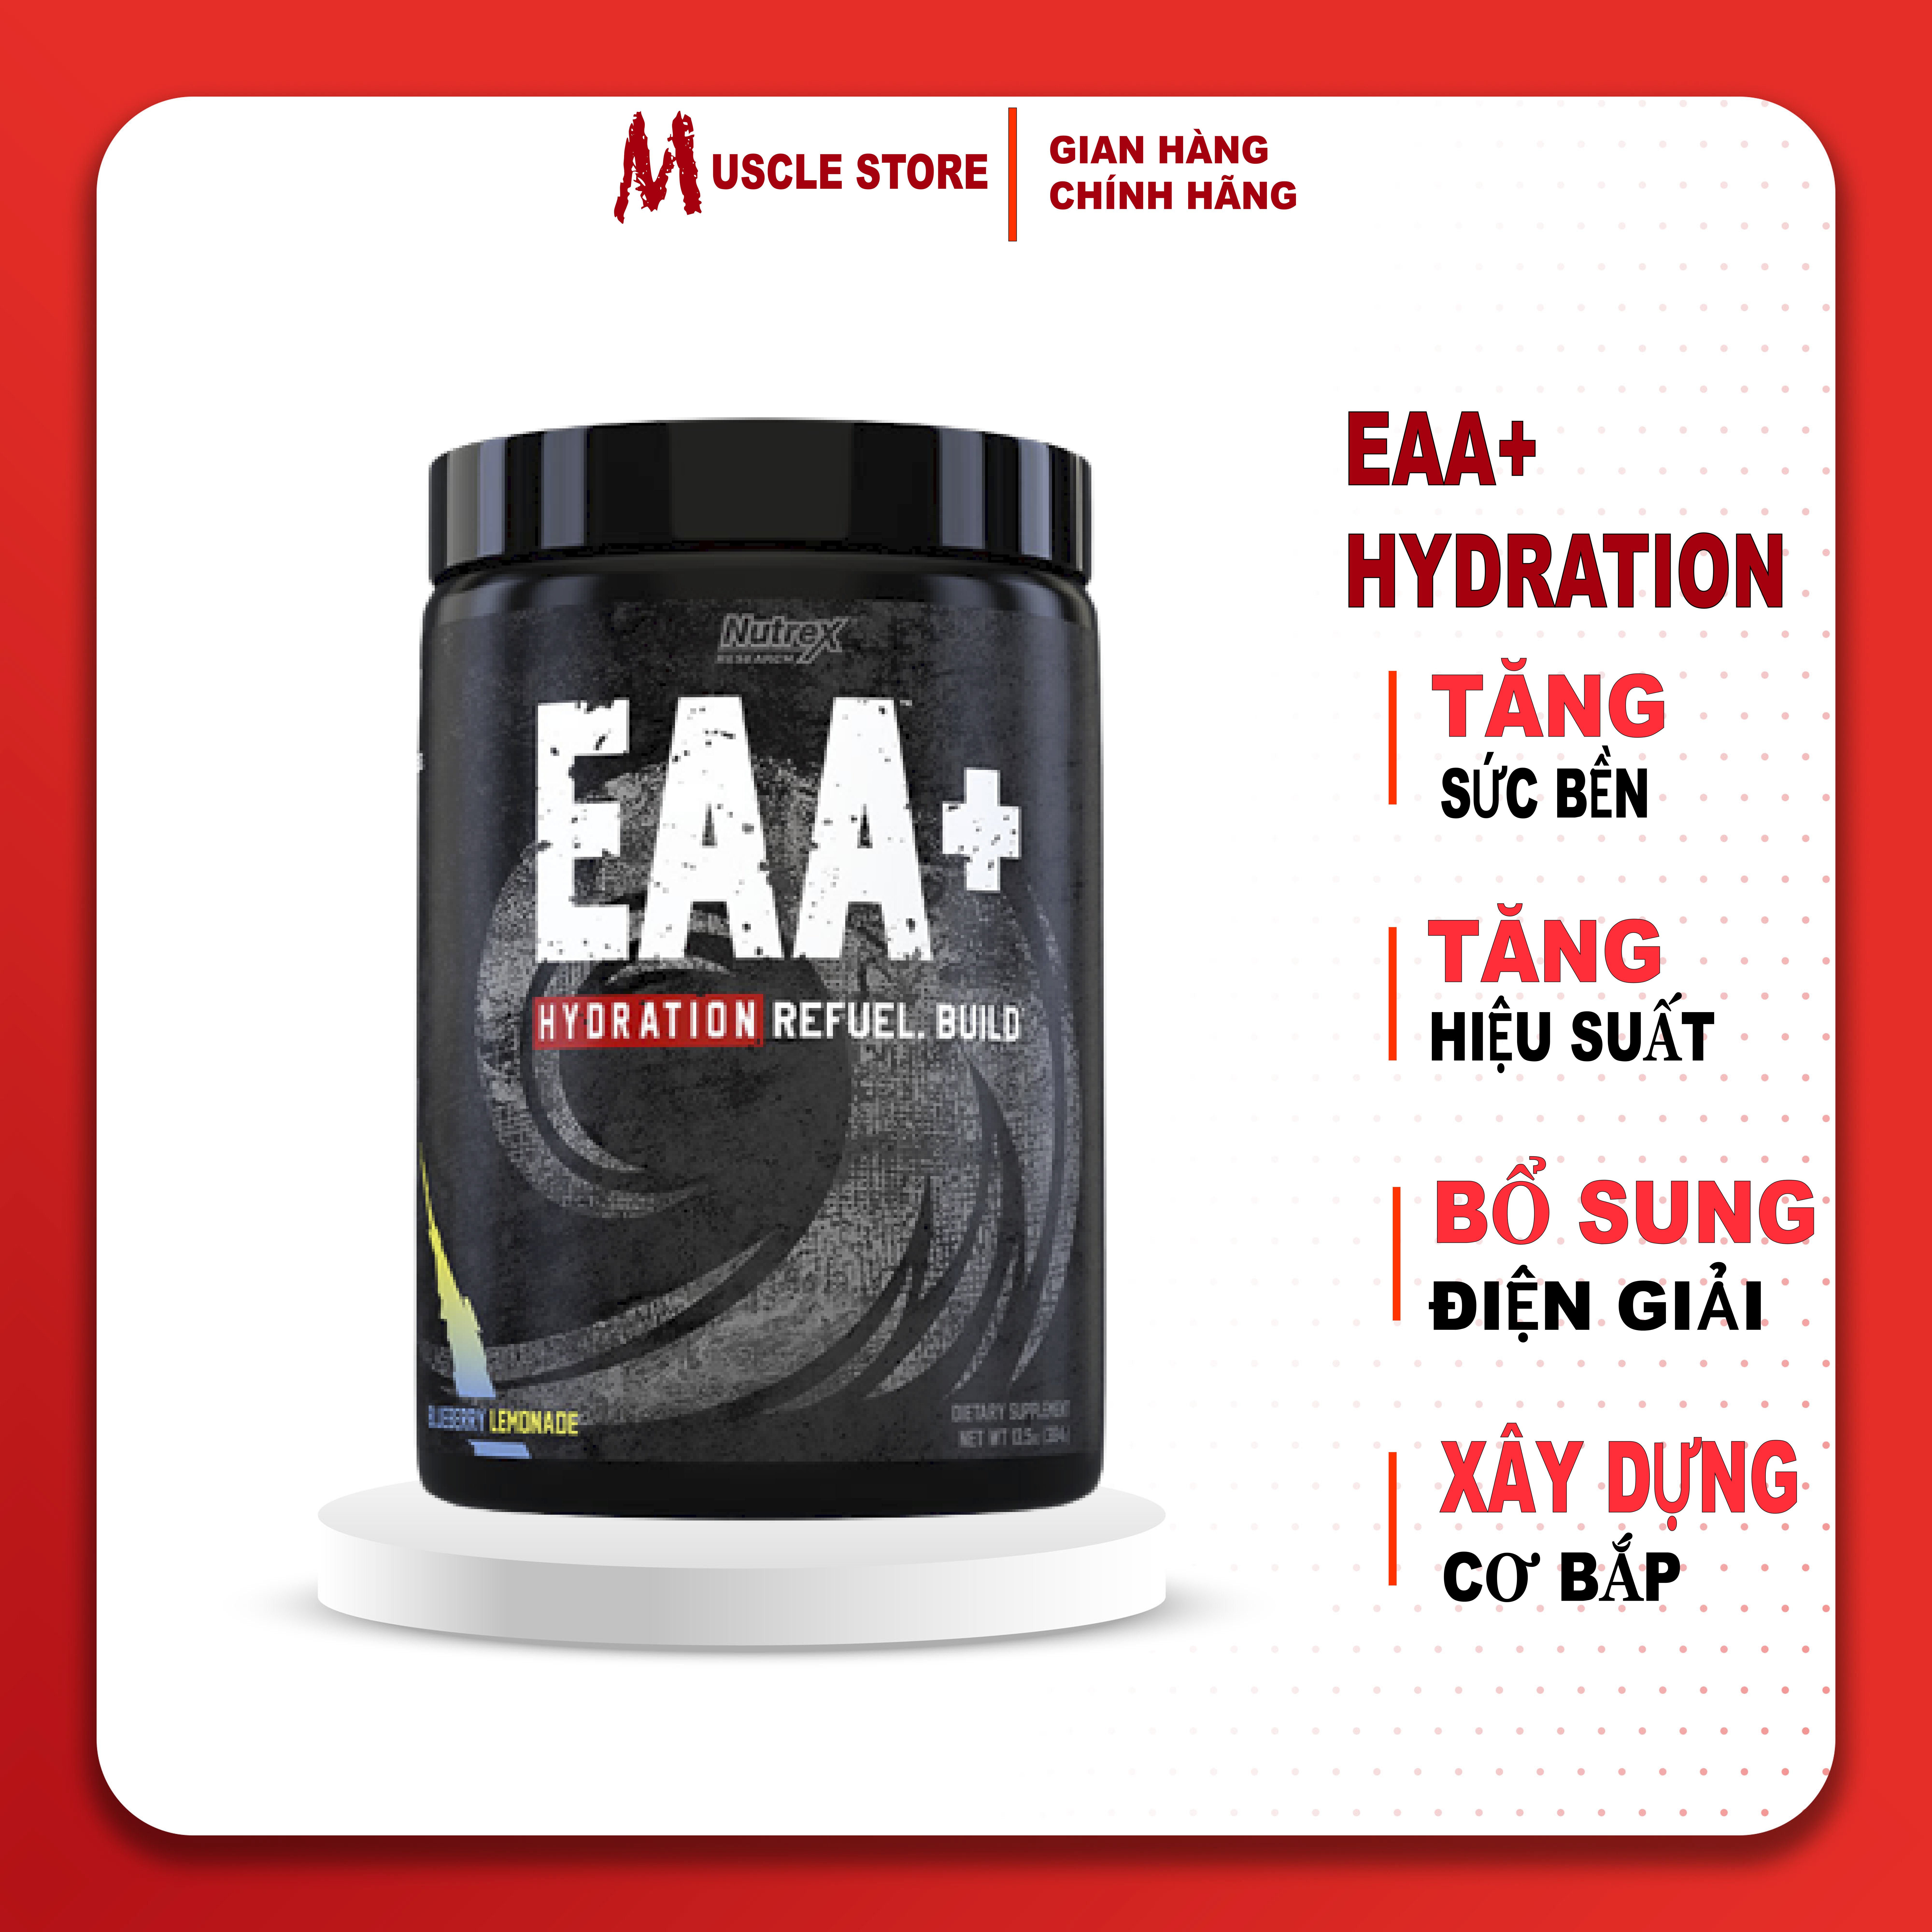 EAA+ Hydration - Nutrex (30Liều), Phục Hồi, Tăng Cơ, Sức Mạnh, Sức Bền, 8G EAA + BCAA + 1.5G Chất Điện Giải